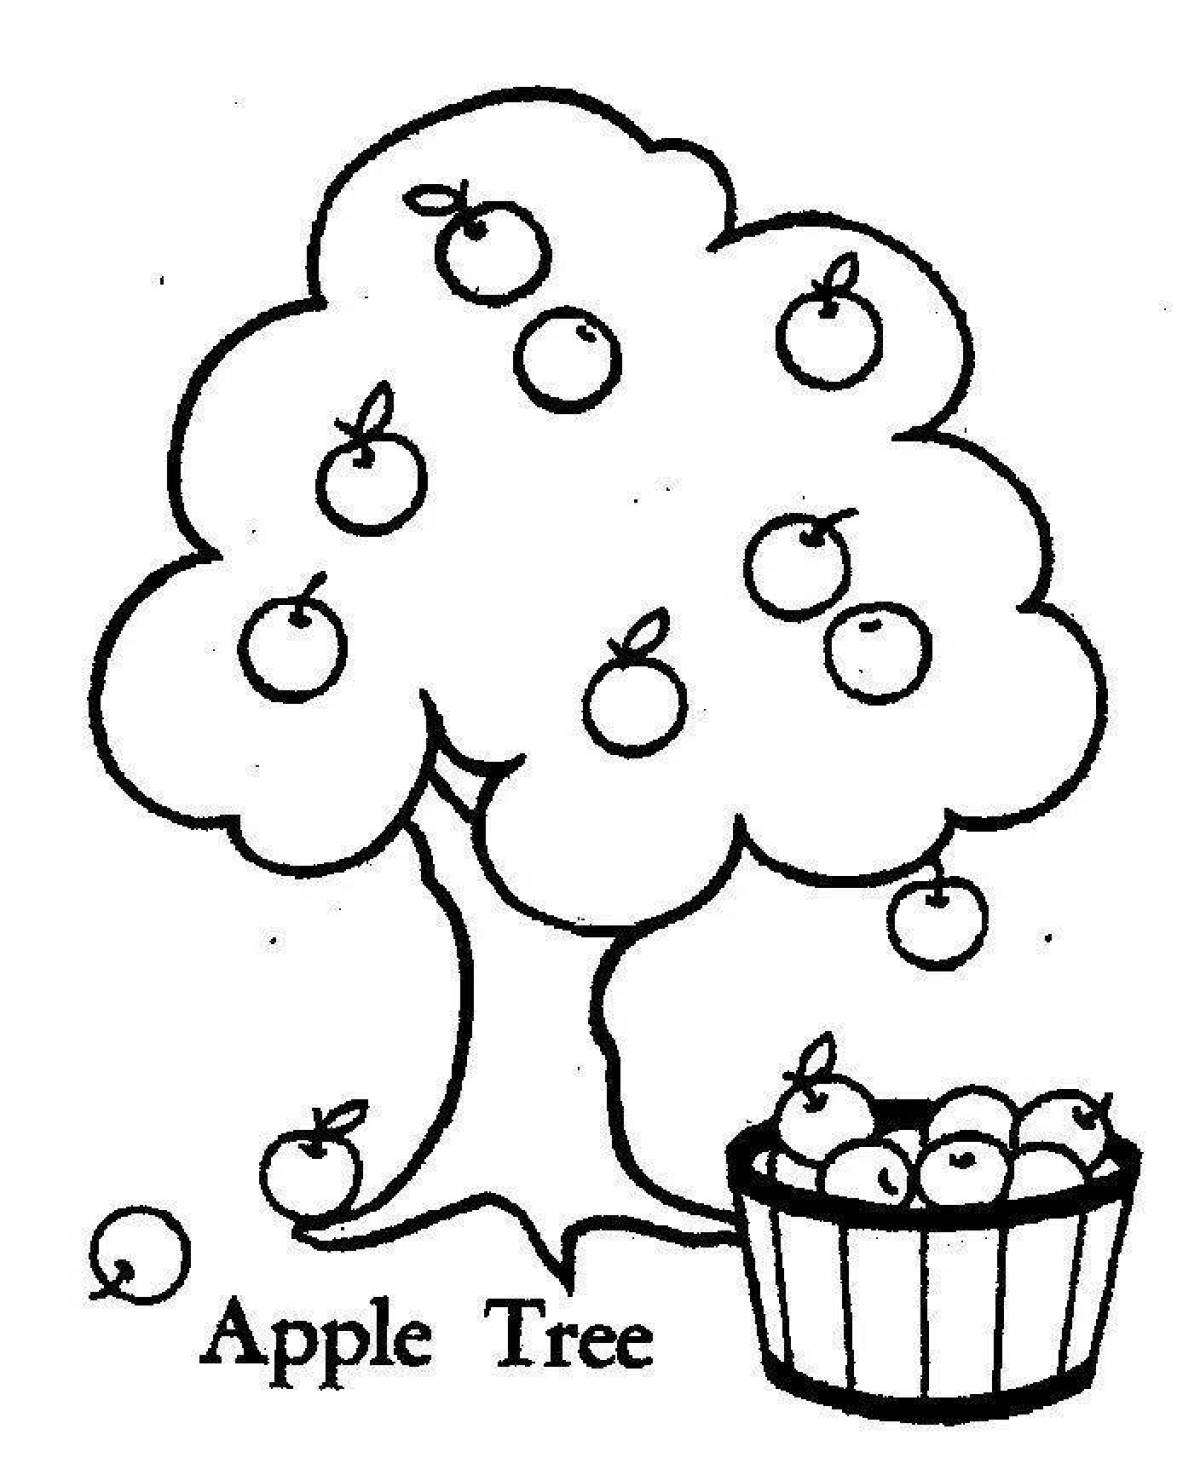 Apple tree #3